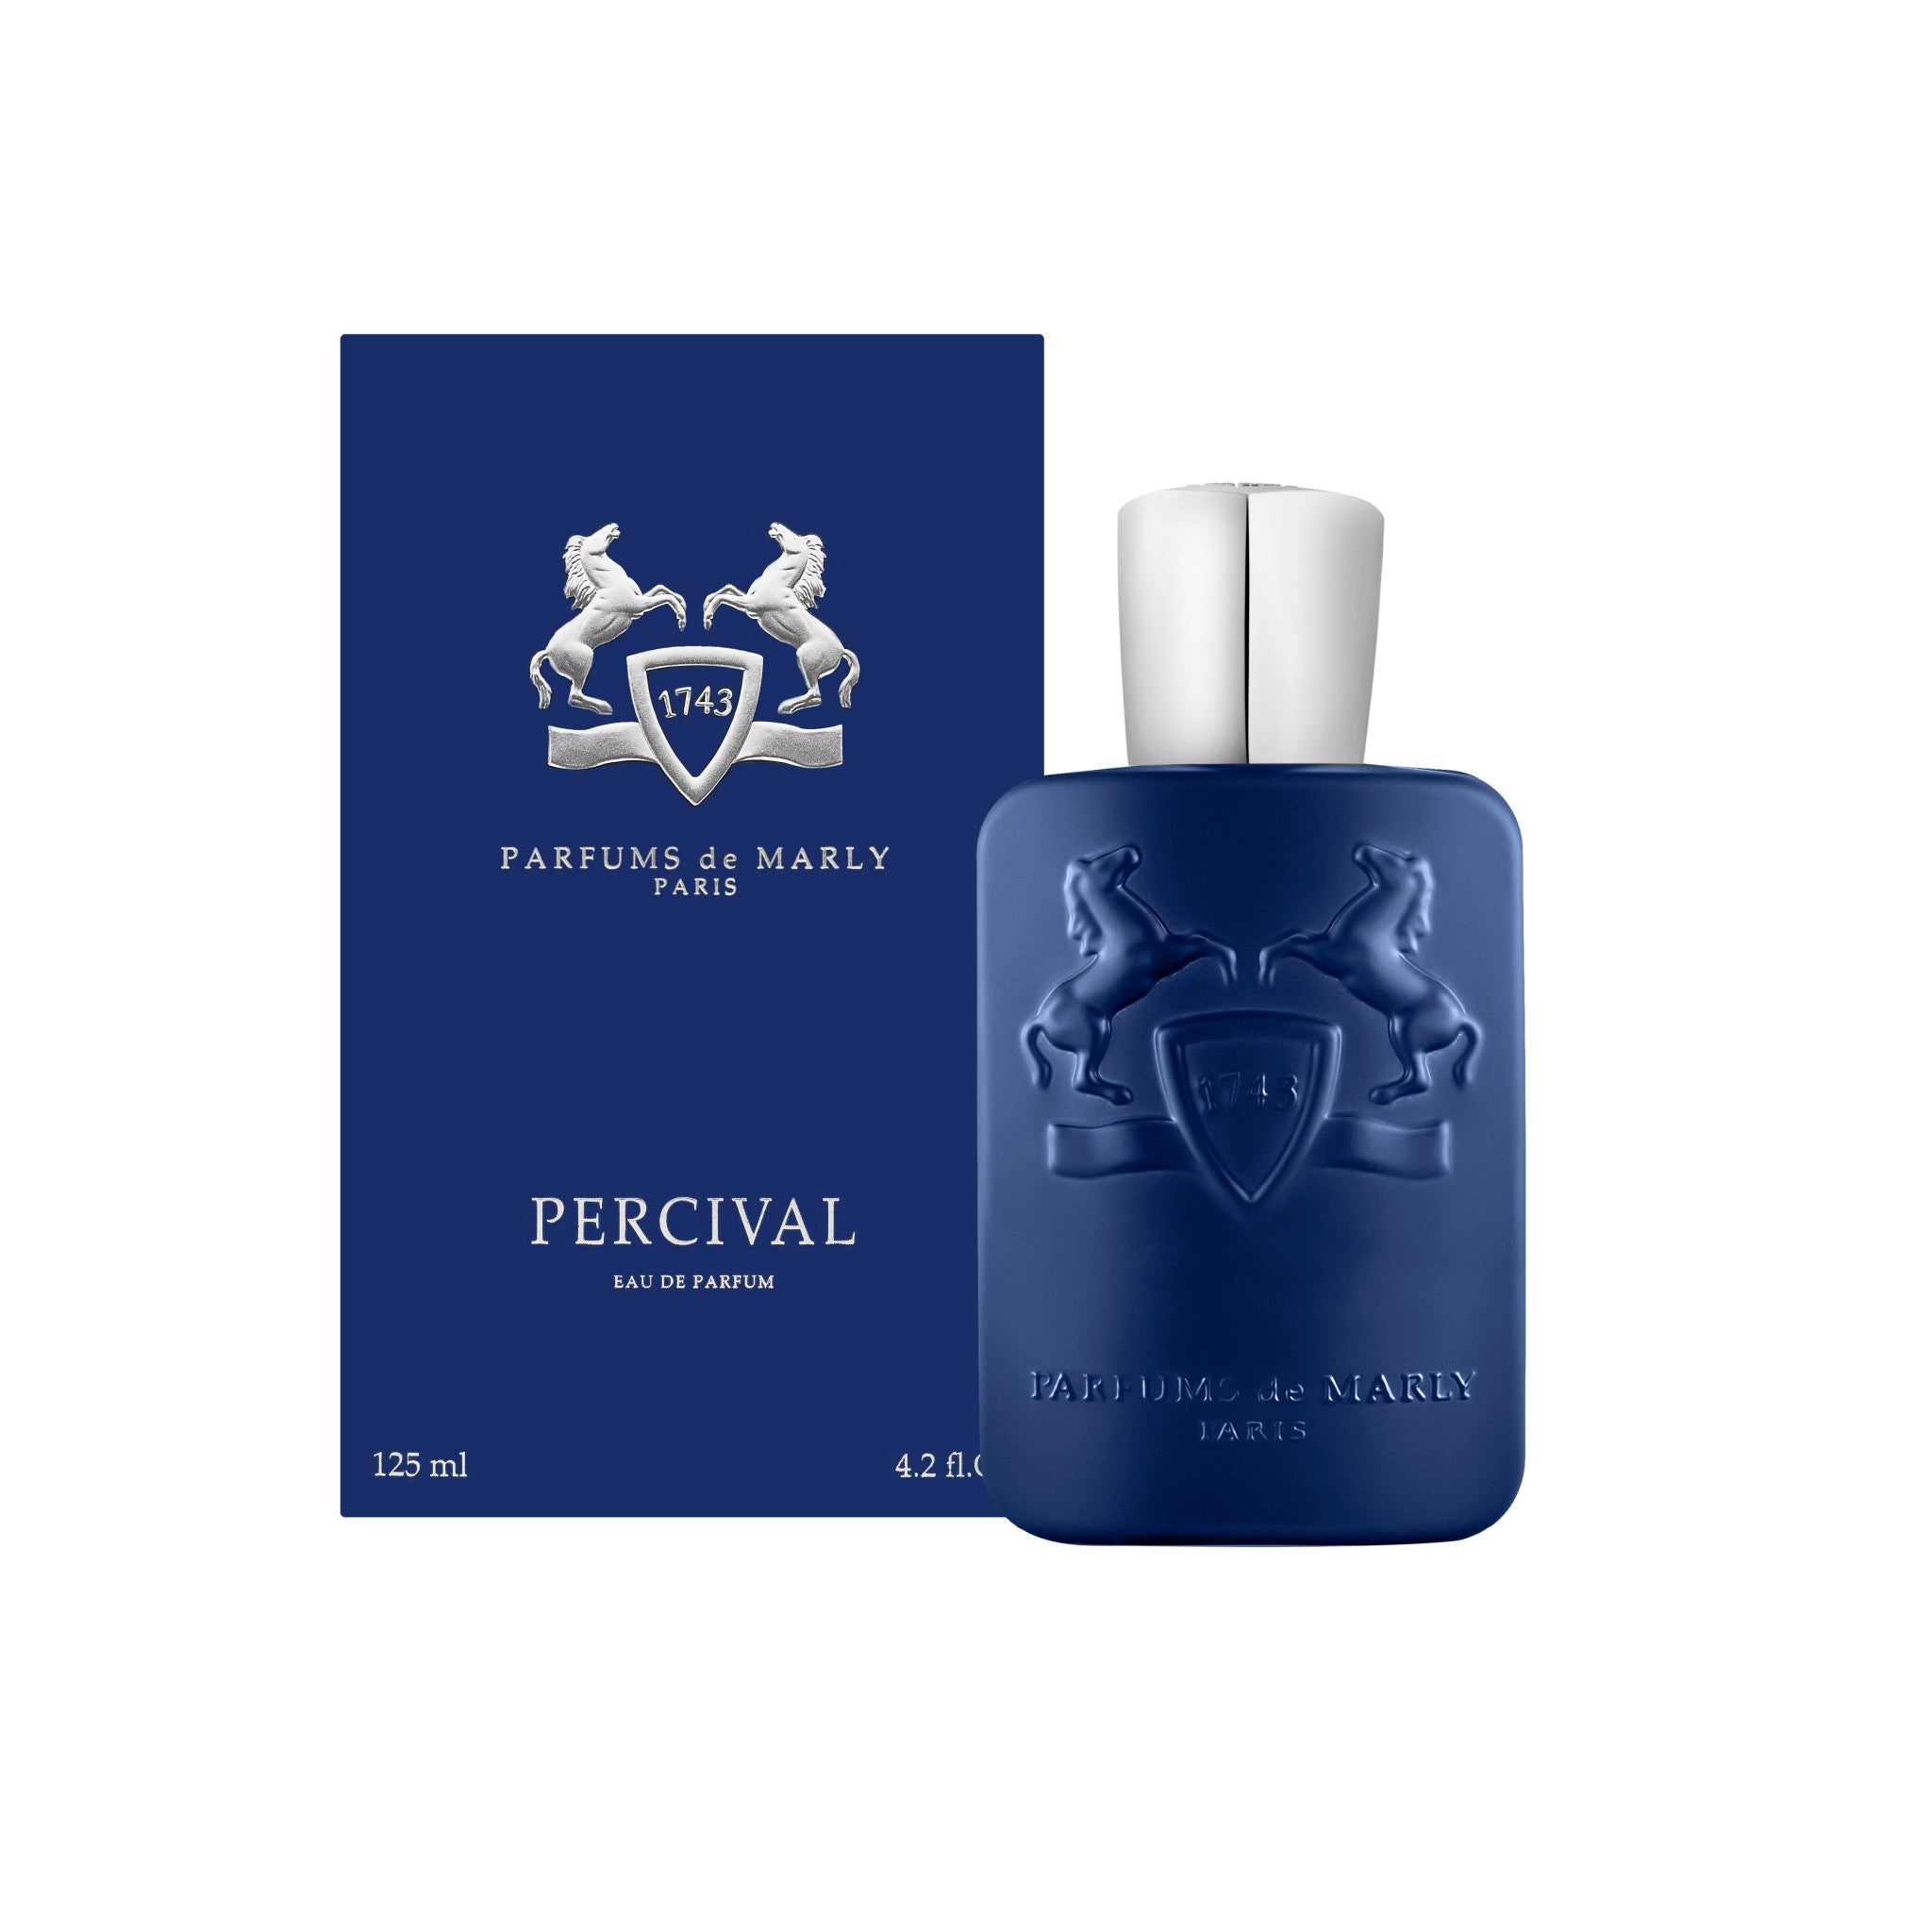 Parfums de Marly Percival Eau de Parfum Size variant: 4.2 fl oz main image.